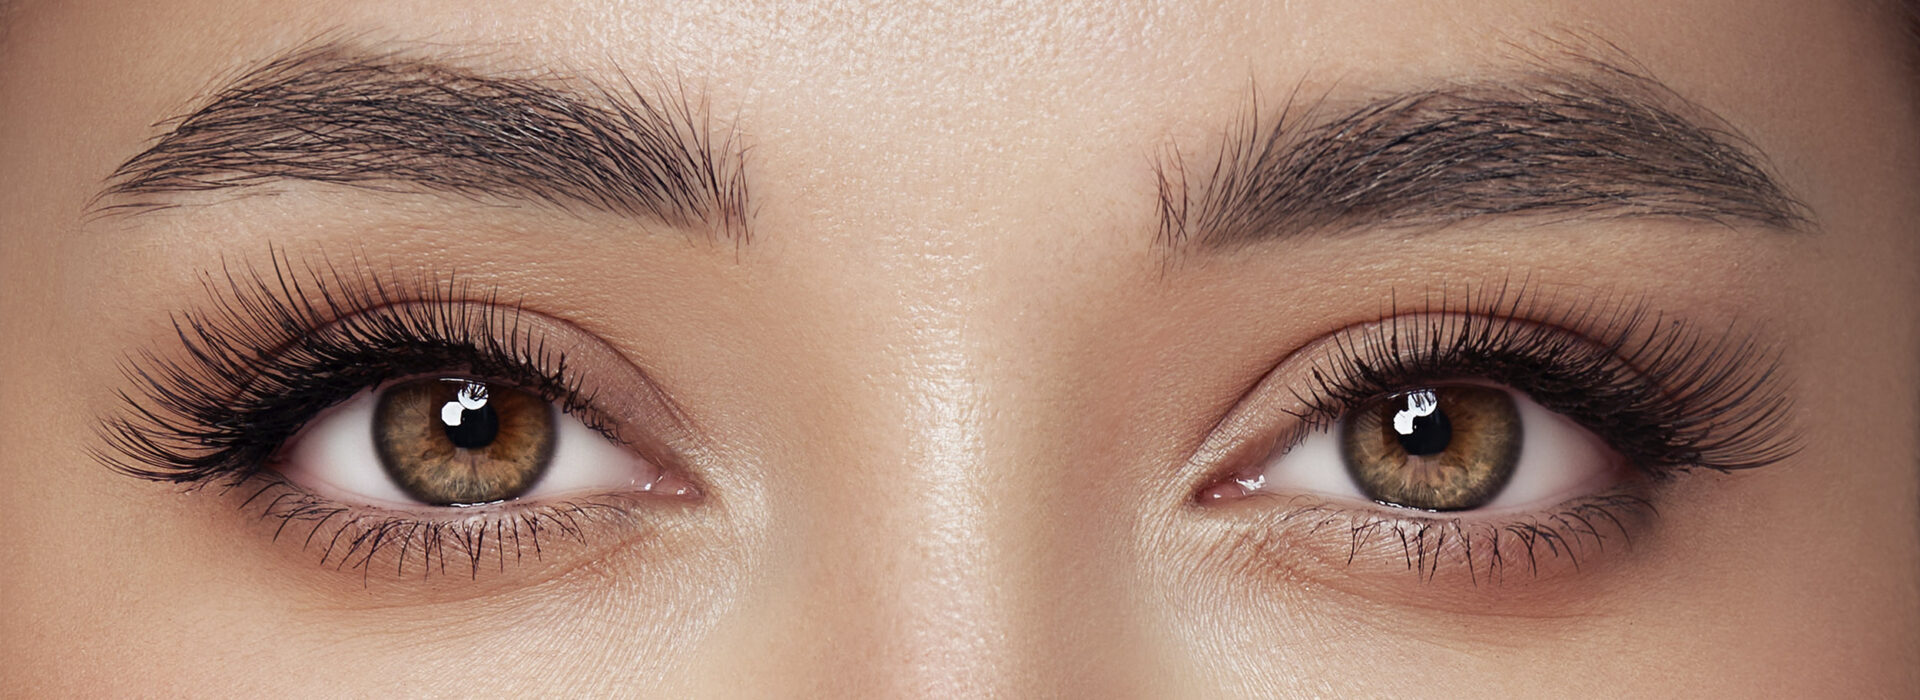 Dois olhos de uma mulher olhando para frente. A imagem foca em sua sobrancelha e cílios.